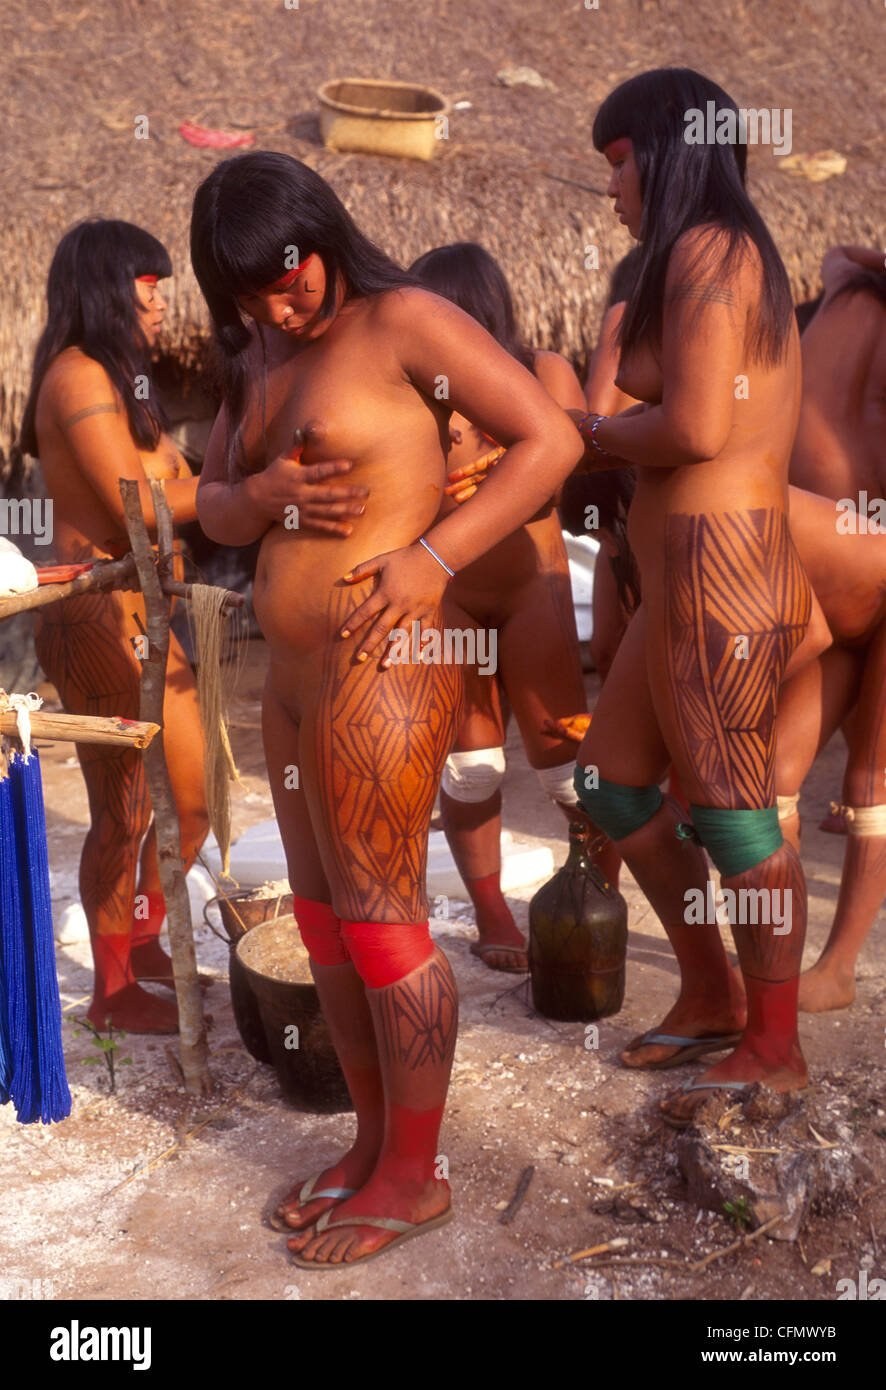 Индейцы женщины ( фото) - Порно фото голых девушек